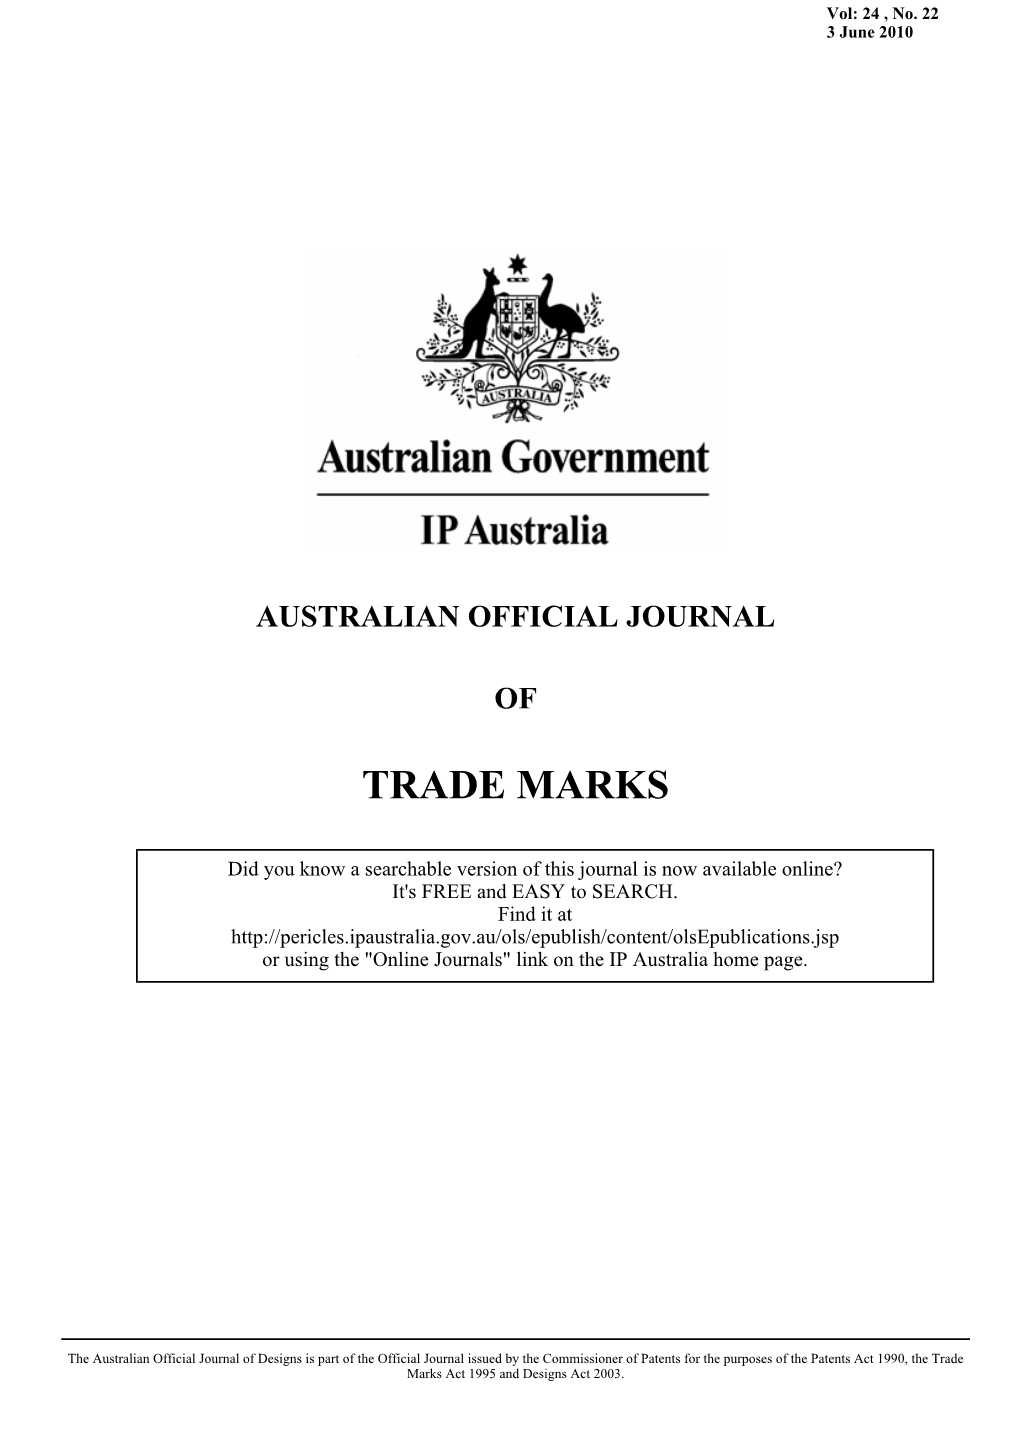 AUSTRALIAN OFFICIAL JOURNAL of TRADE MARKS 3 June 2010